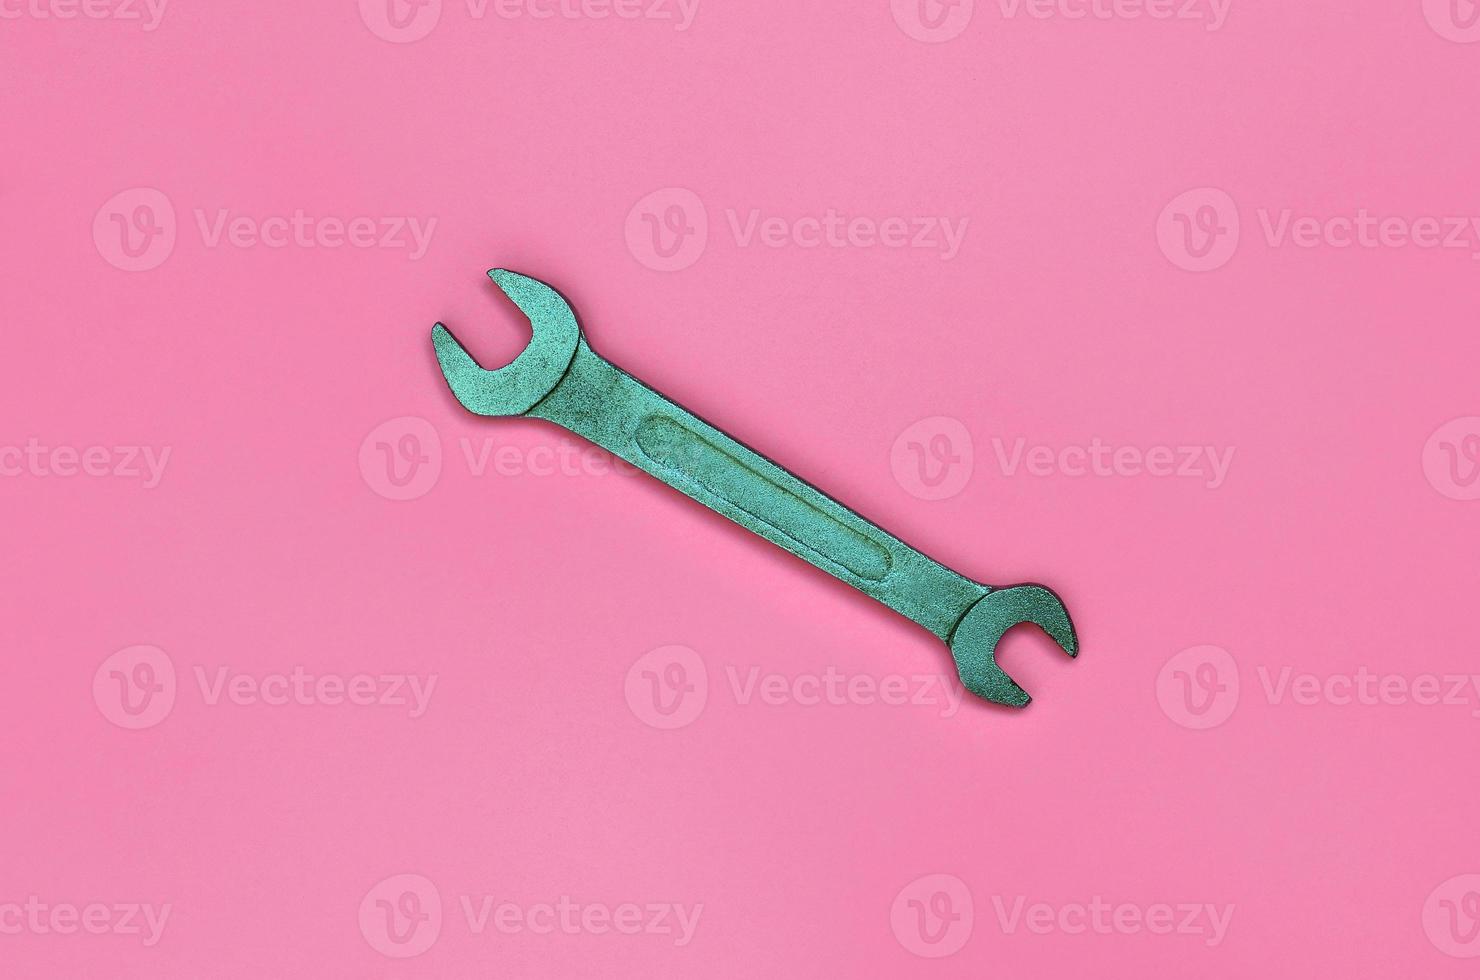 la llave metálica se encuentra sobre la textura del fondo del papel de color rosa pastel de moda en un concepto mínimo foto